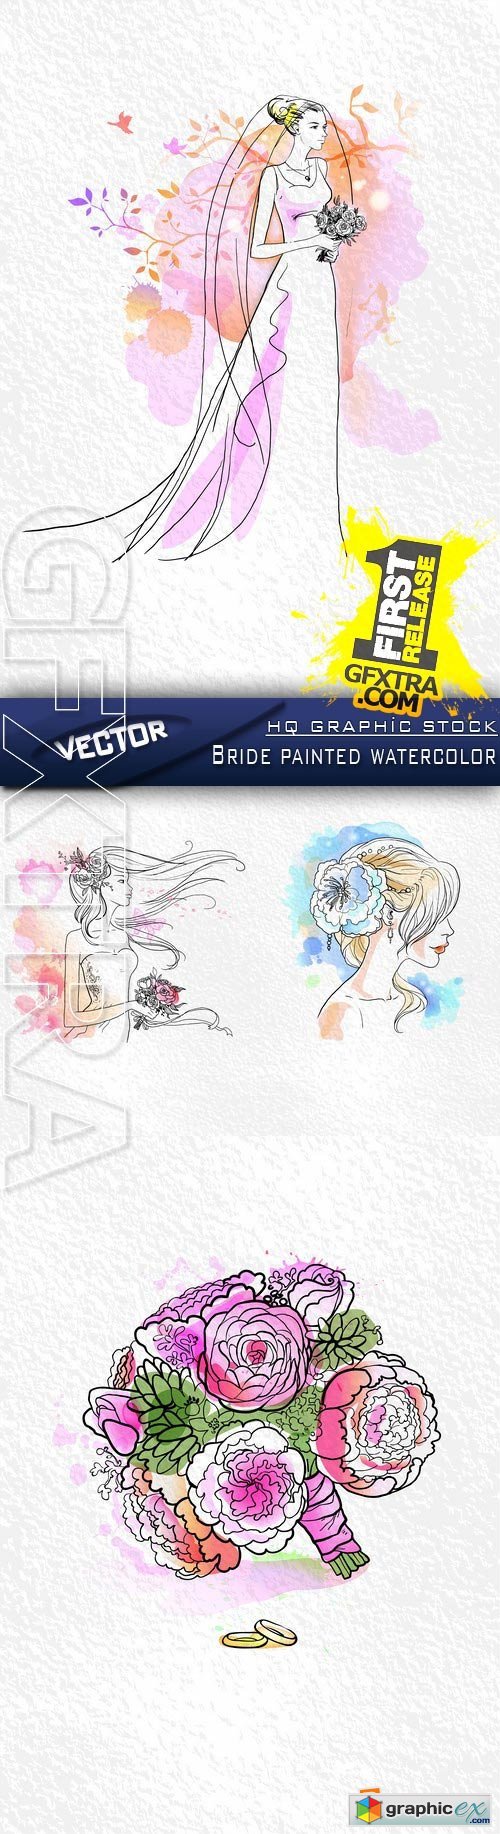 Stock Vector - Bride painted watercolor